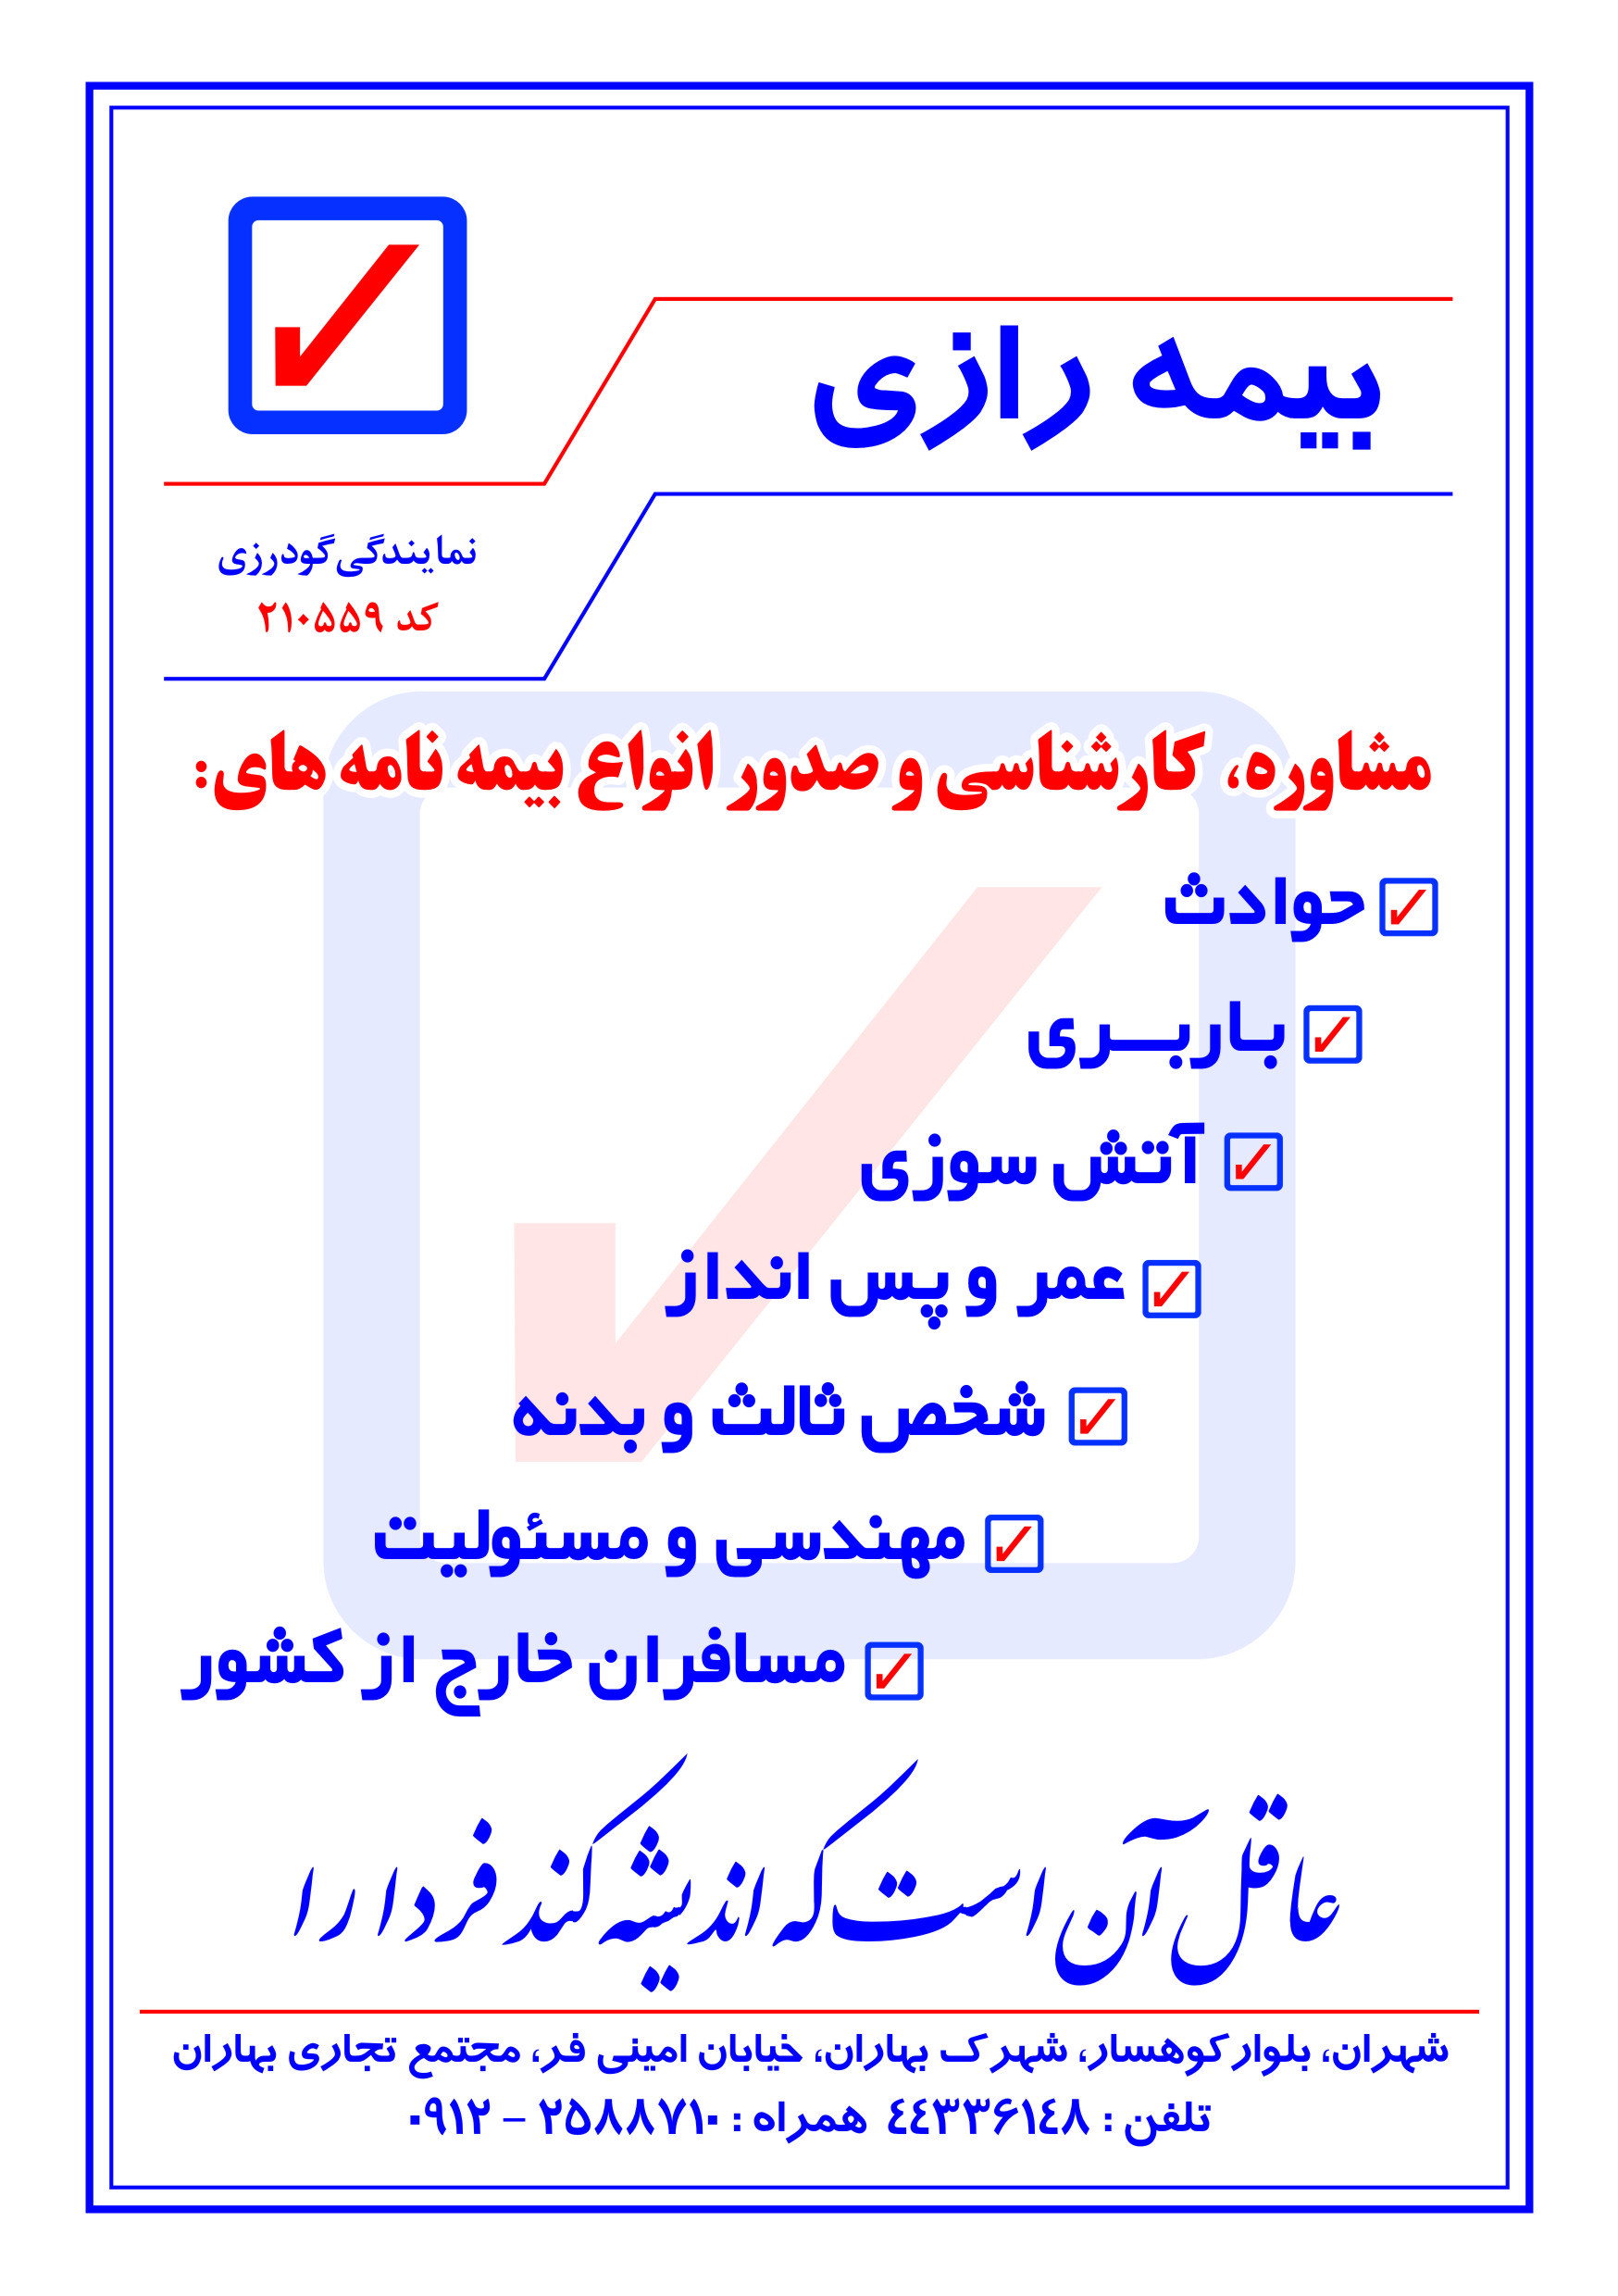 جامع ترین ارائه کننده خدمات صدور انواع بیمه نامه در تهران